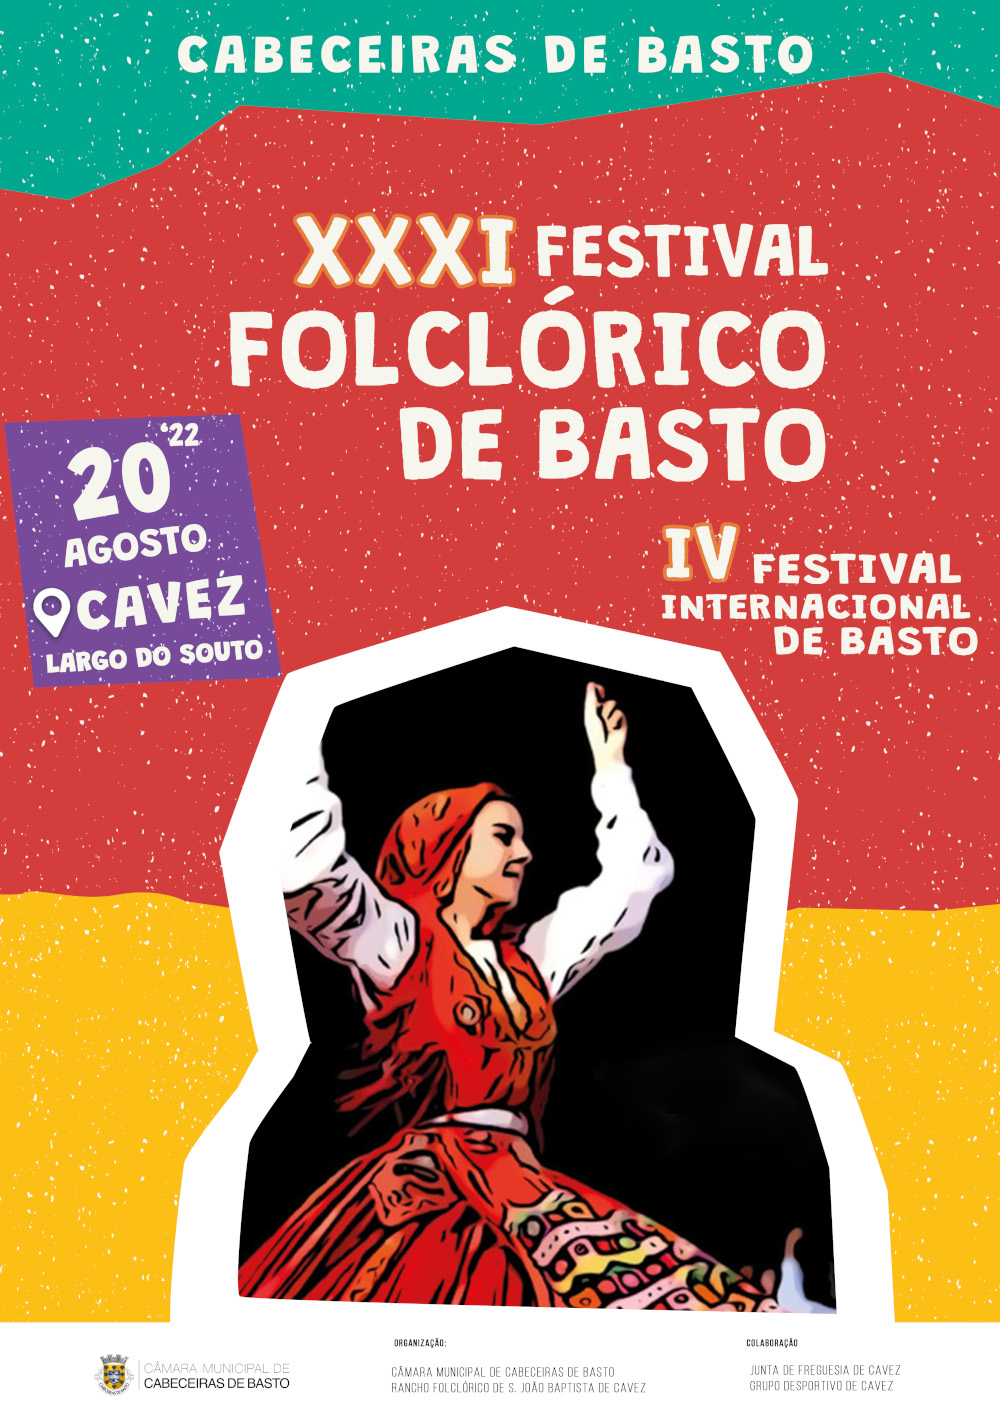 XXXI Festival Folclórico de Basto